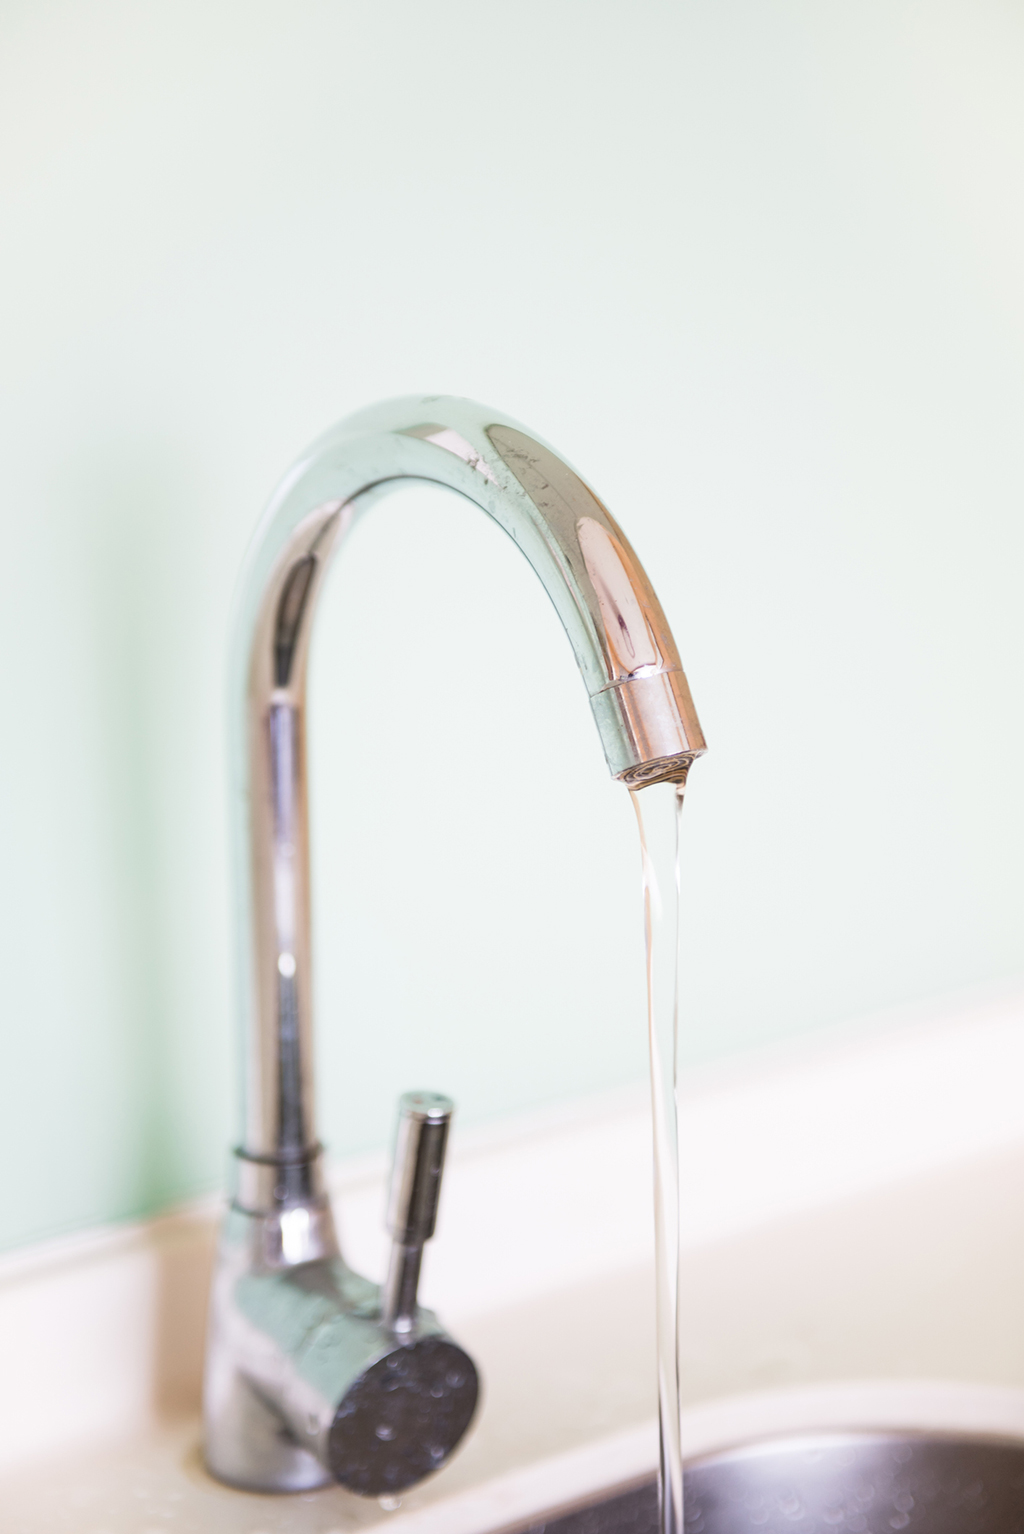 Plumbing Repair: Why Is My Water Pressure Low? | Denton, TX